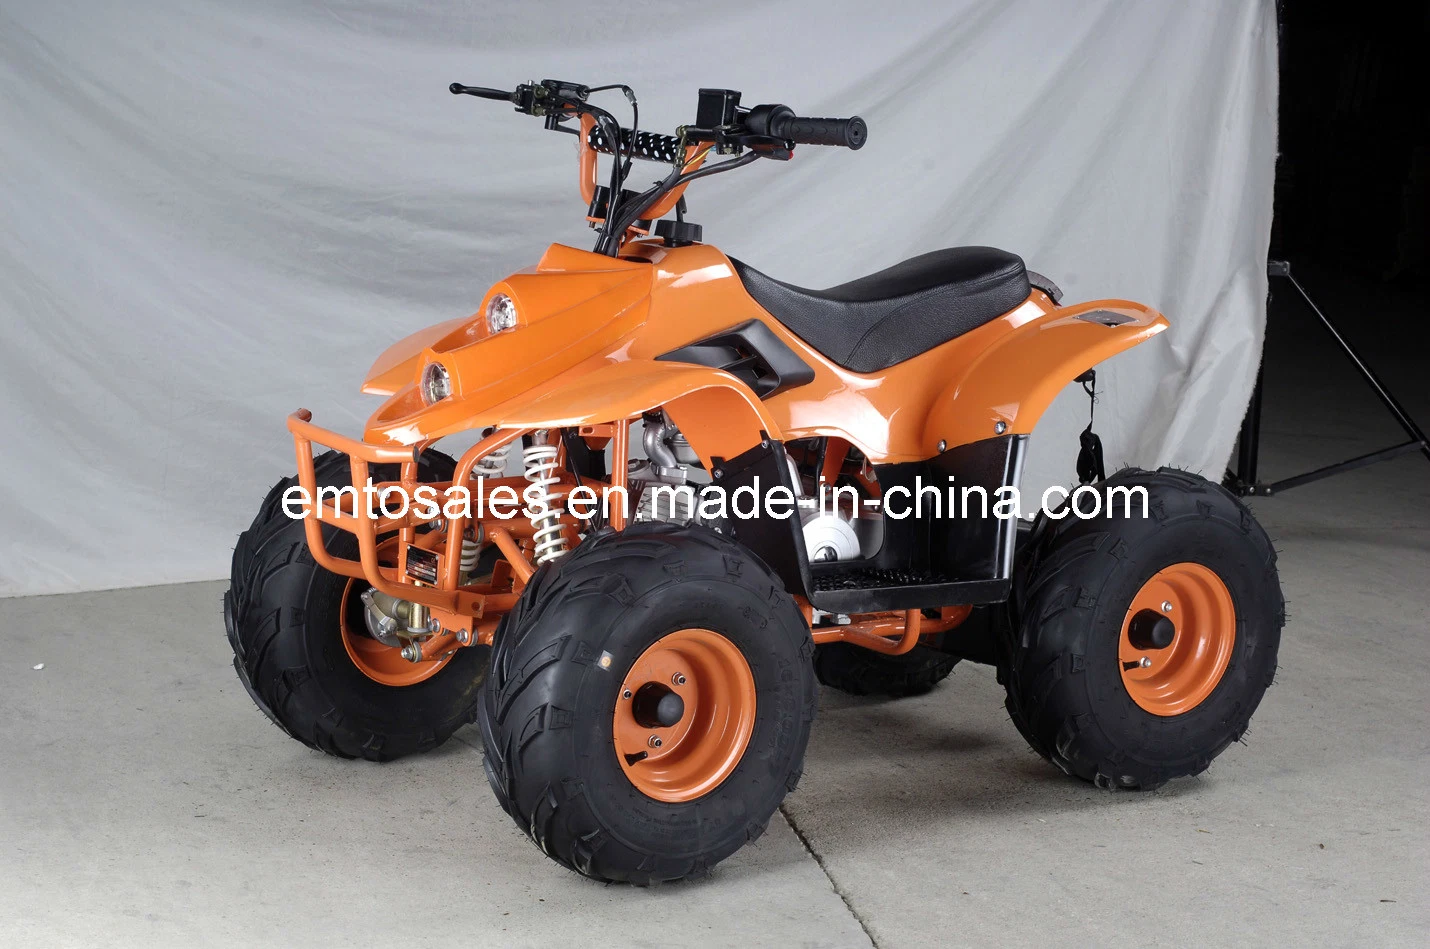 7 Inch Big Wheel 110cc ATV Quads (ET-ATV-006)